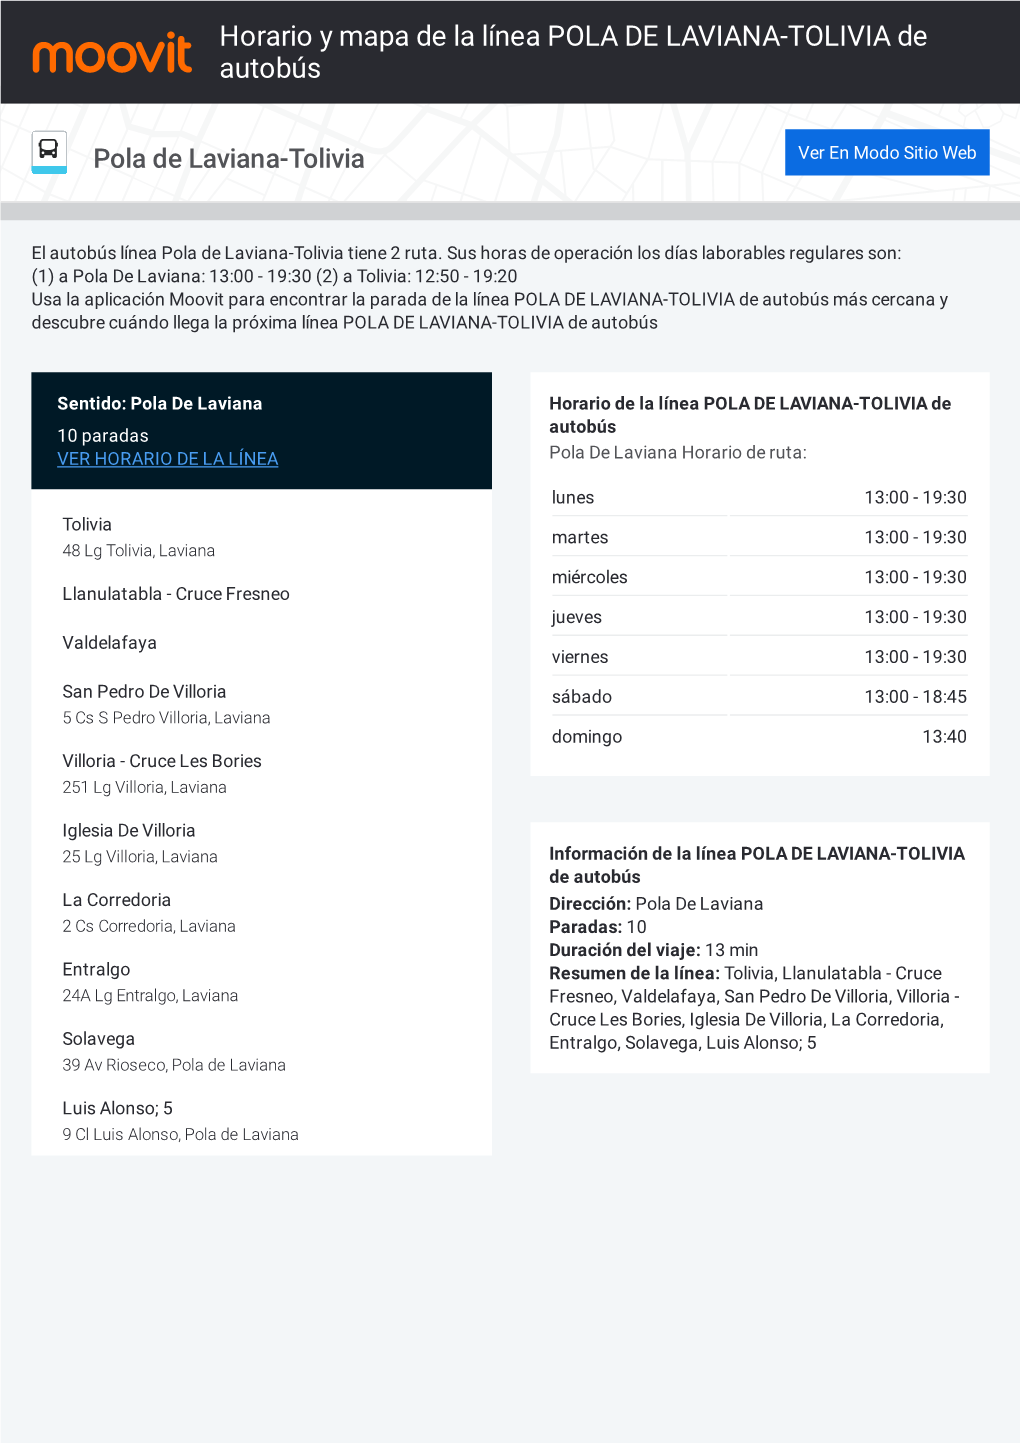 Horario Y Mapa De La Ruta POLA DE LAVIANA-TOLIVIA De Autobús